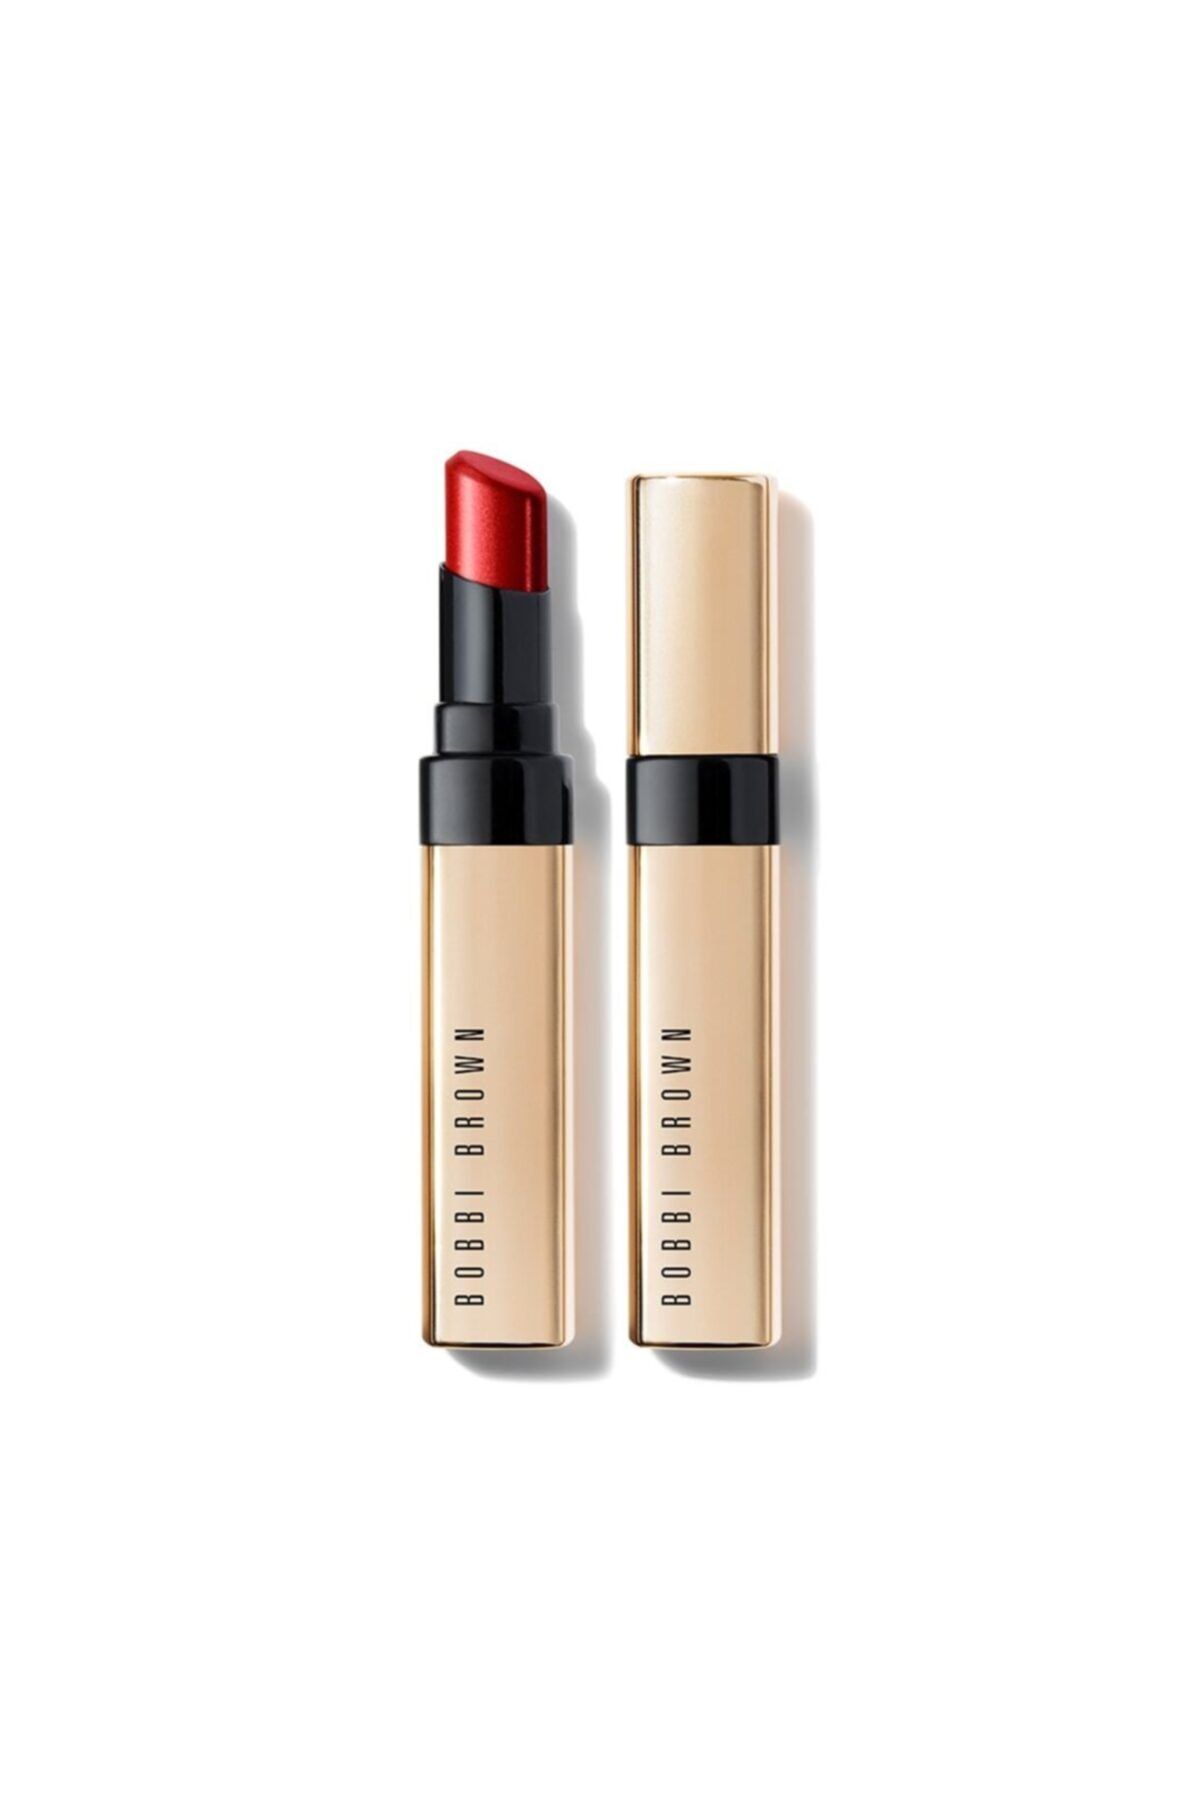 Bobbi Brown Luxe Shine Intense Lipstick / Ruj Fh19 2.3g Red Stiletto 716170225531